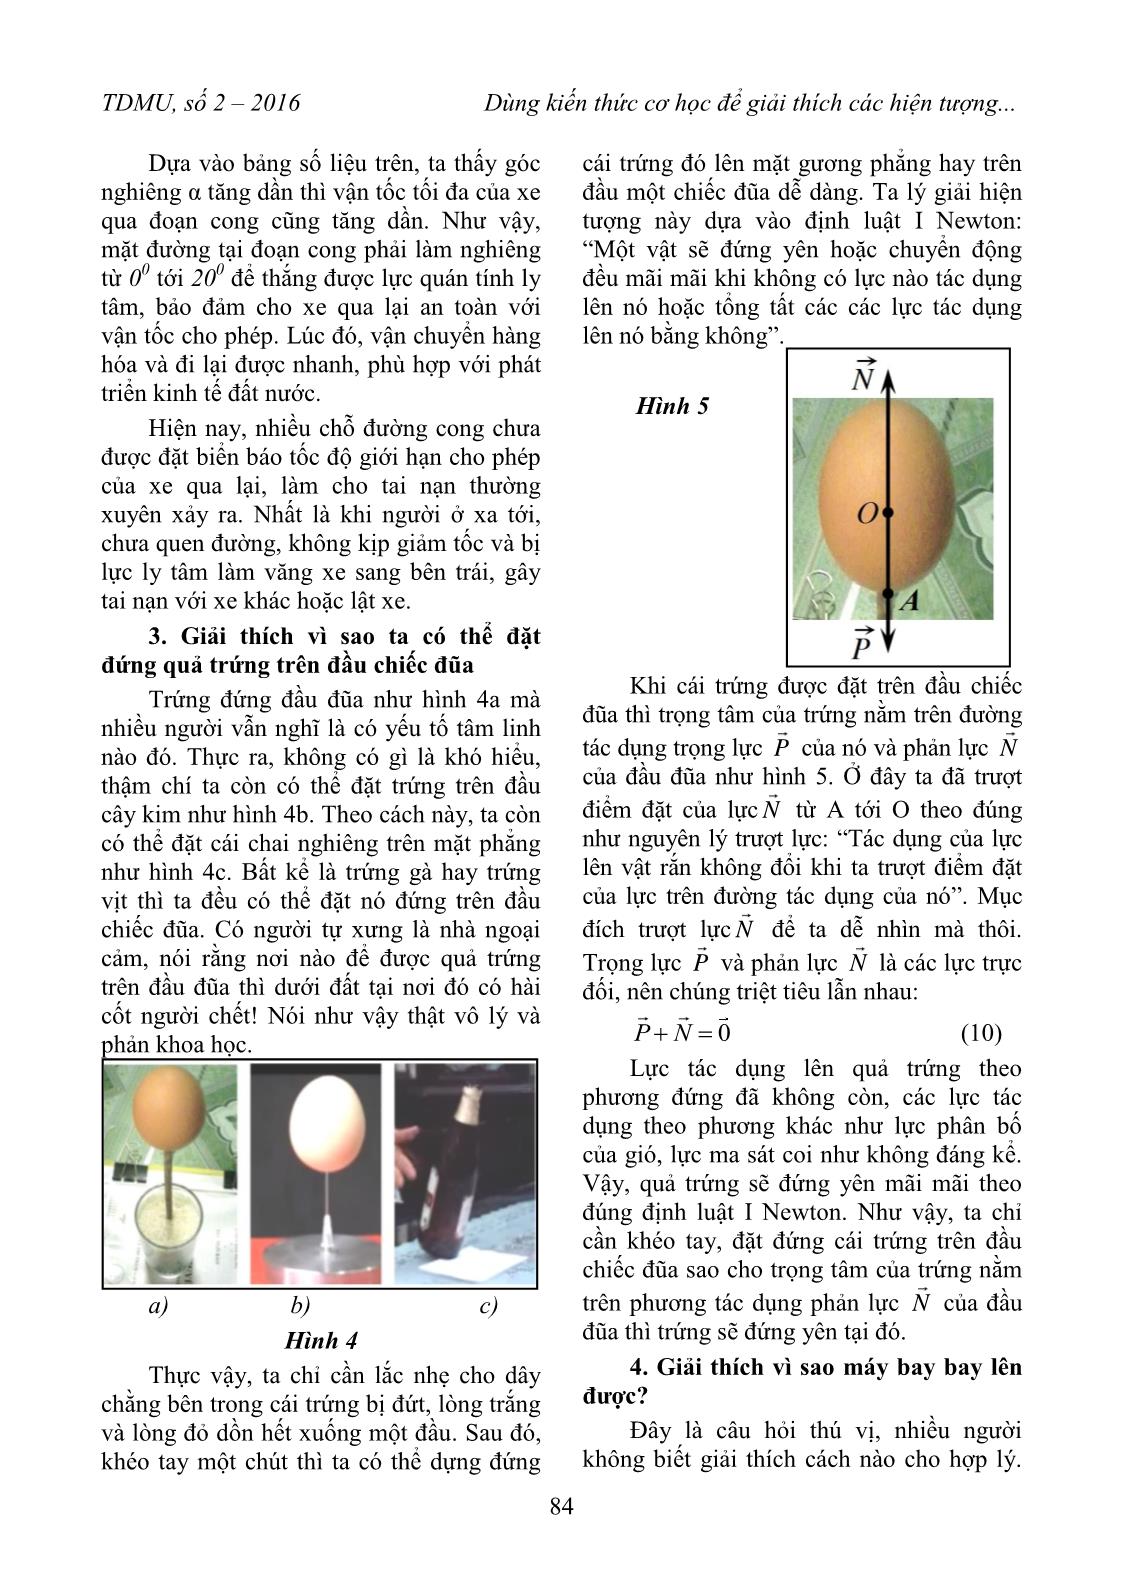 Dùng kiến thức cơ học để giải thích các hiện tượng lý thú trong đời sống trang 4